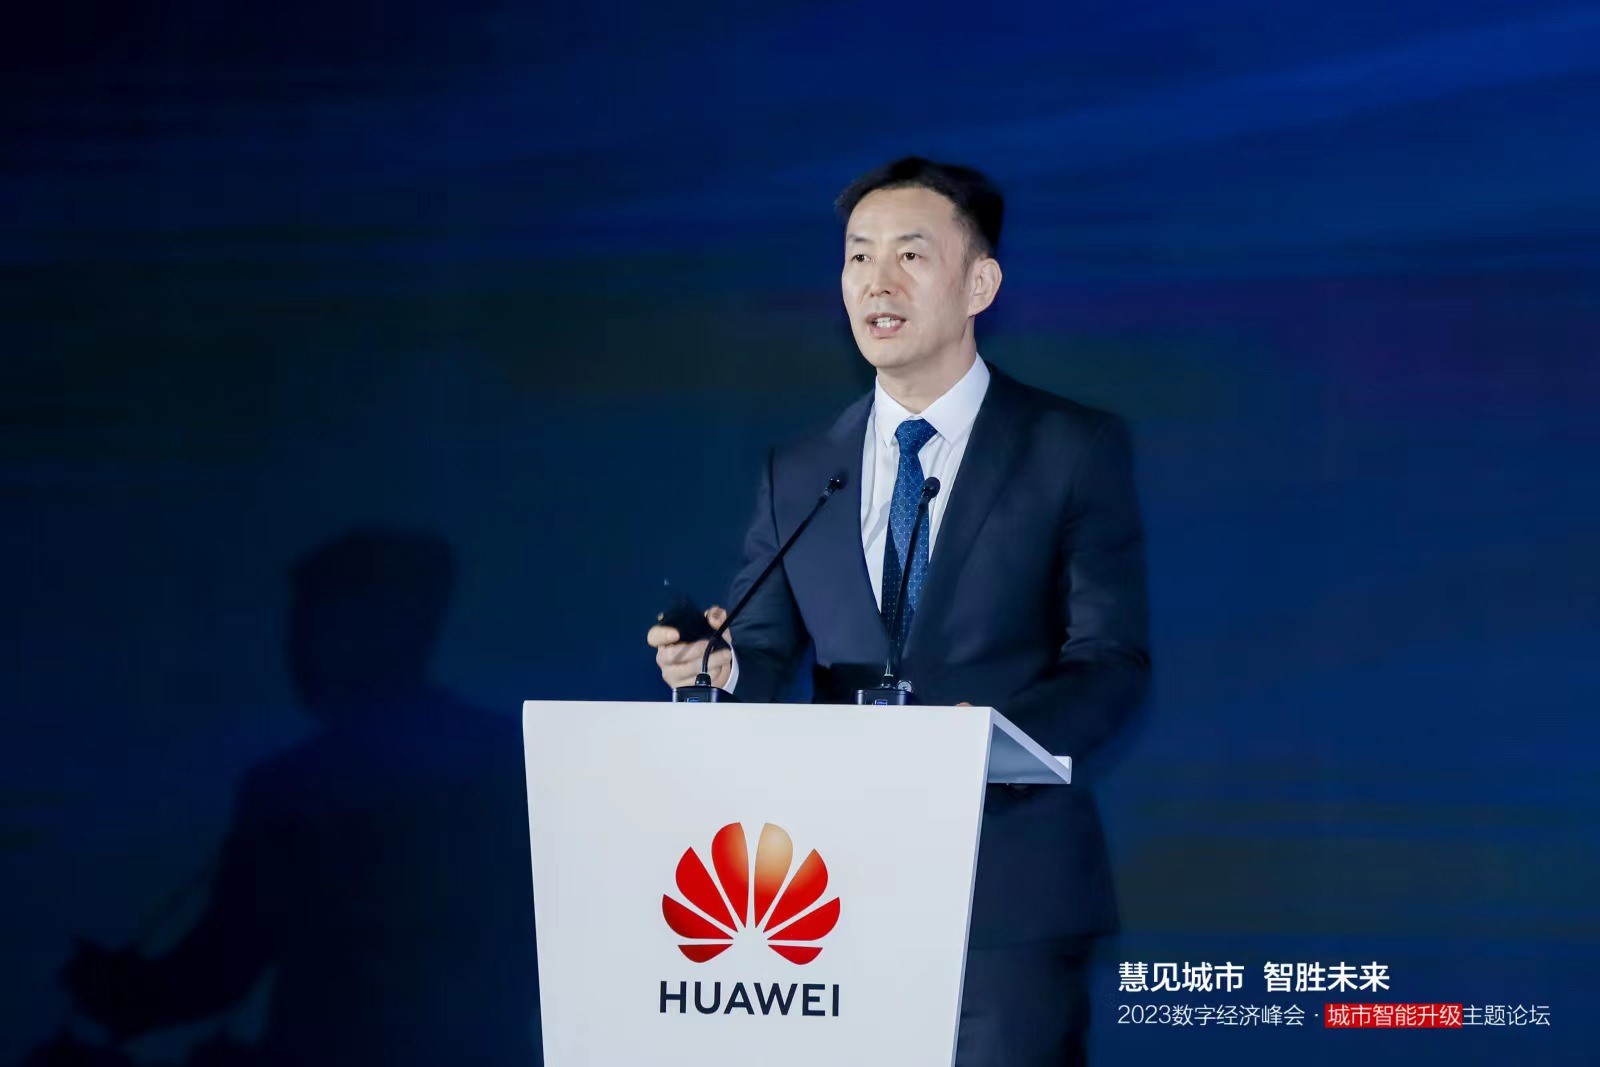 华为云计算公司副总裁、战略与产业发展部总裁黄瑾发表主旨演讲。